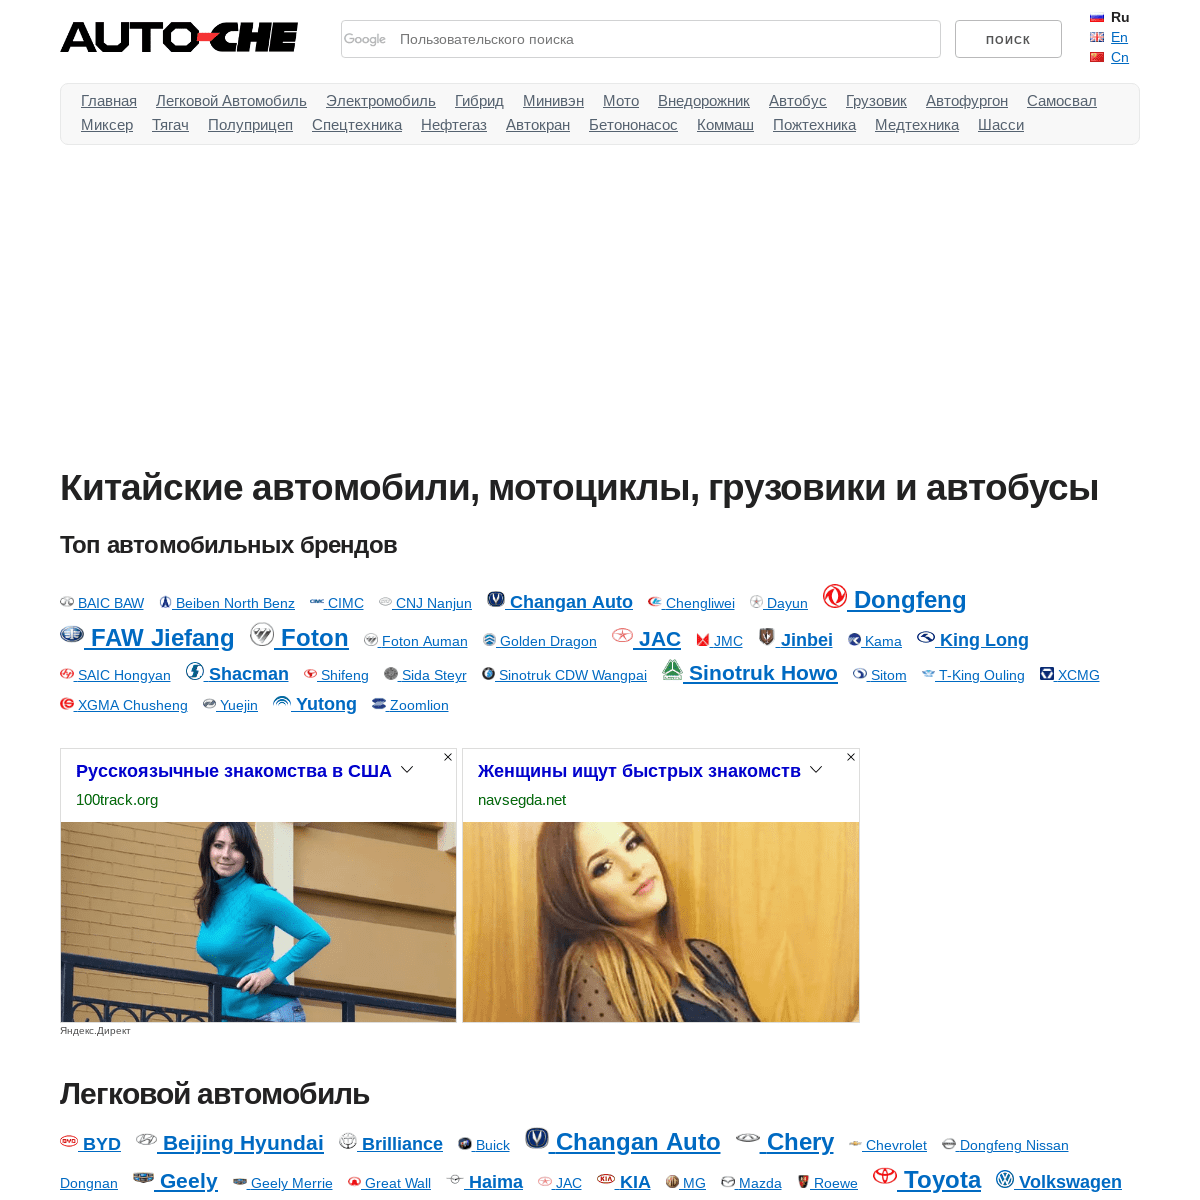 A complete backup of auto-che.ru